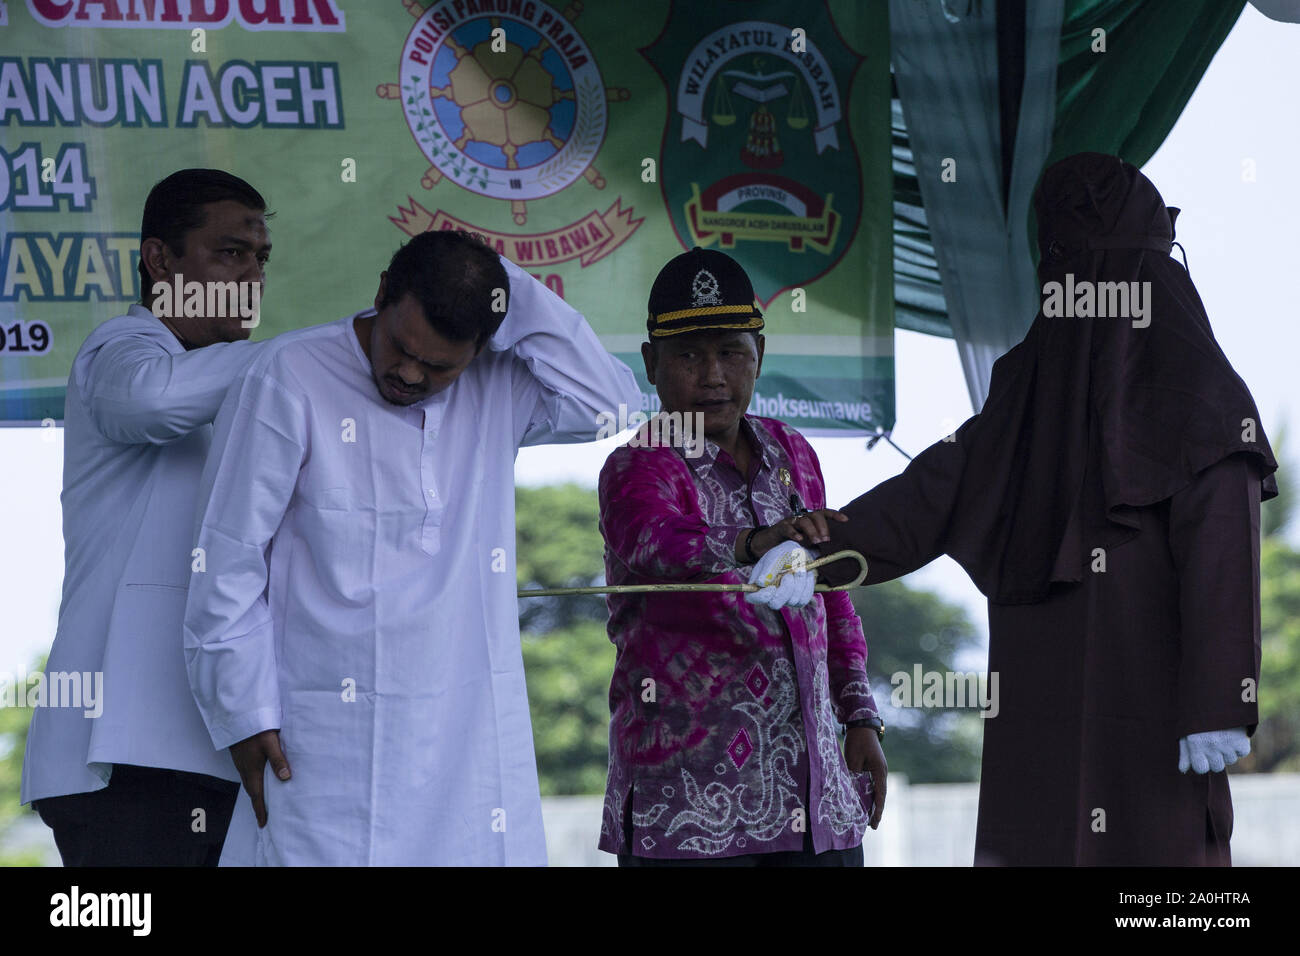 Lhokseumawe, Aceh, Indonesien. 20 Sep, 2019. Beamte, die Zeuge der Scharia Beamte der Mann, gefangen wurde und eine Affäre mit einer anderen Frau, die auf der Rückseite während der Satz in einem Stadion in Lhokseumawe, Aceh zu peitschen. Die Paare, die erwischt wurden und eine Affäre waren 9 mal jeden für das Verletzen der islamischen Scharia in Aceh, die die konservativen Provinz des Islamischen Rechts in Indonesien gepeitscht. Credit: zikri Maulana/ZUMA Draht/Alamy leben Nachrichten Stockfoto